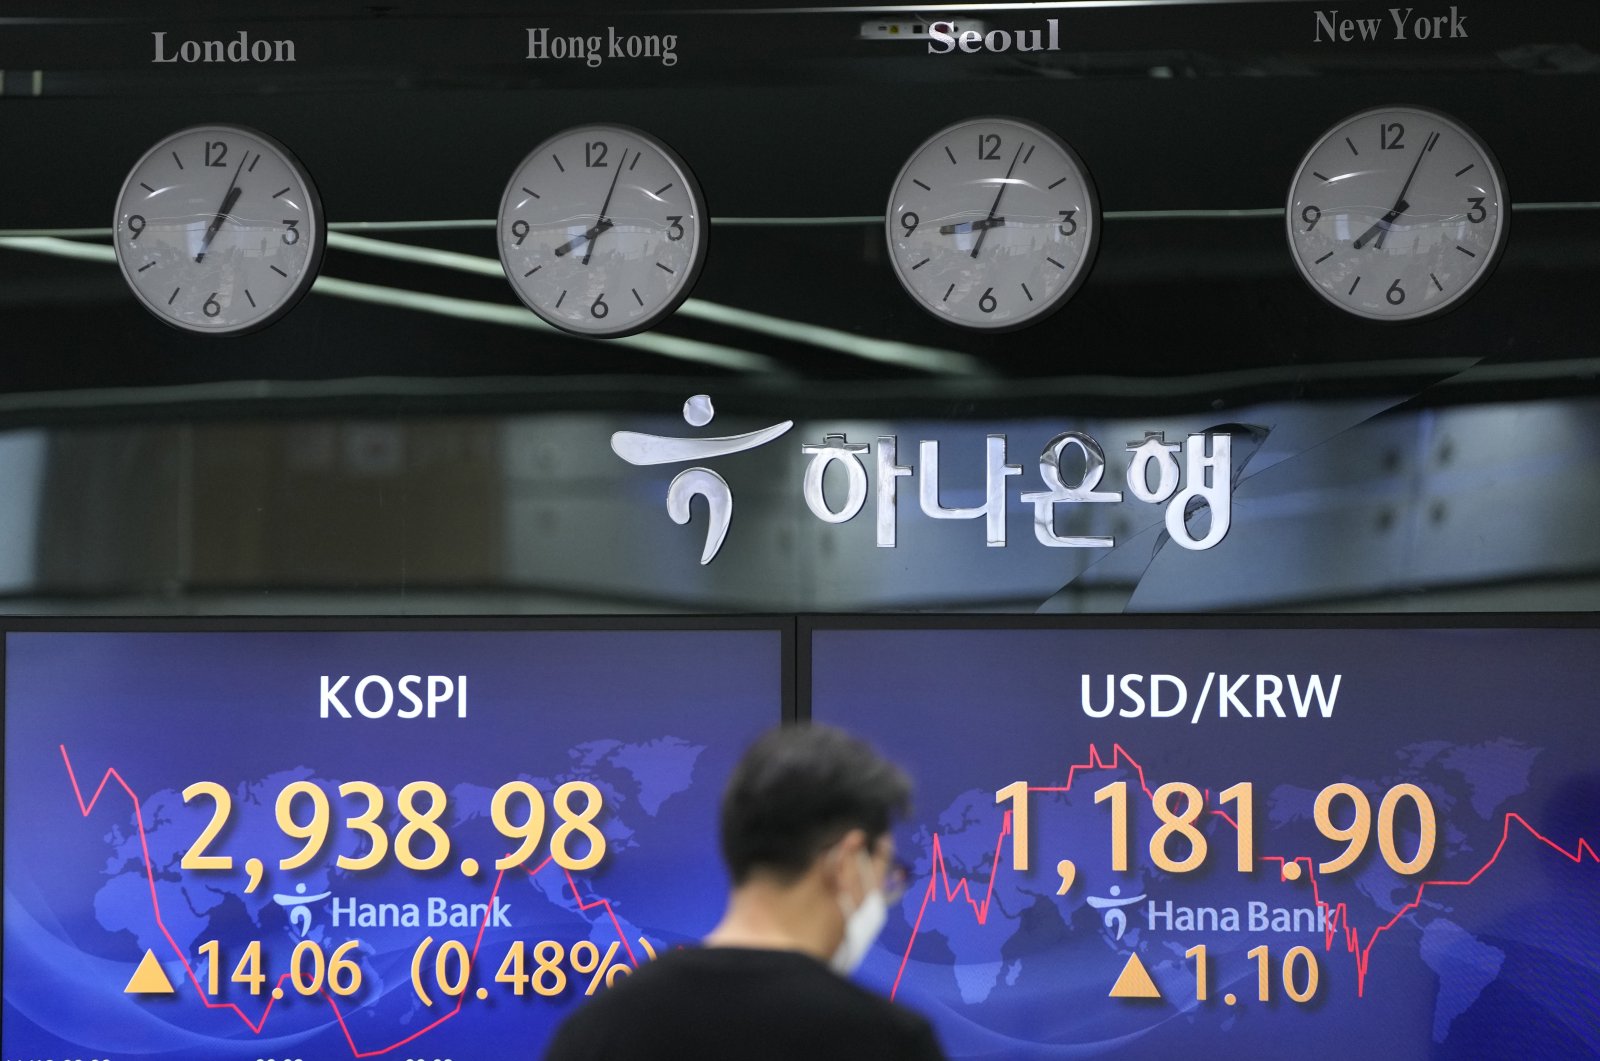 Pasar global di bawah tekanan inflasi, kekhawatiran tumbuh di Asia